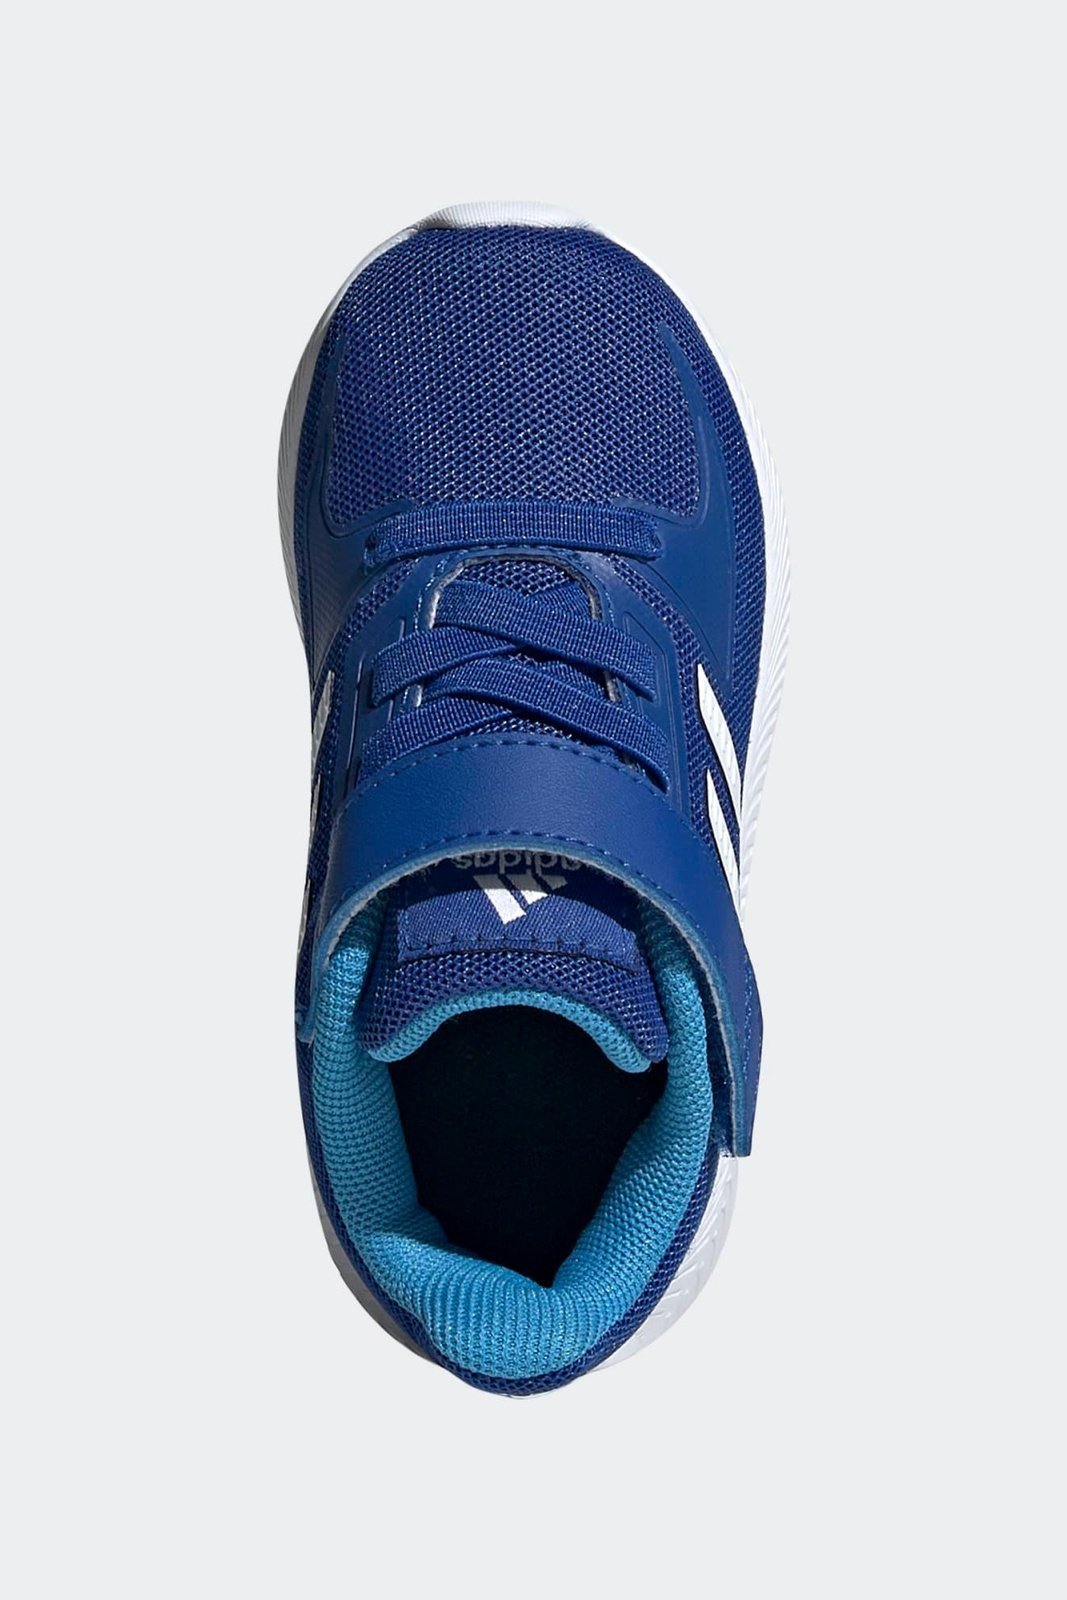 ADIDAS - נעל ספורט לילדים RUNFALCON 2.0 I בצבע כחול - MASHBIR//365